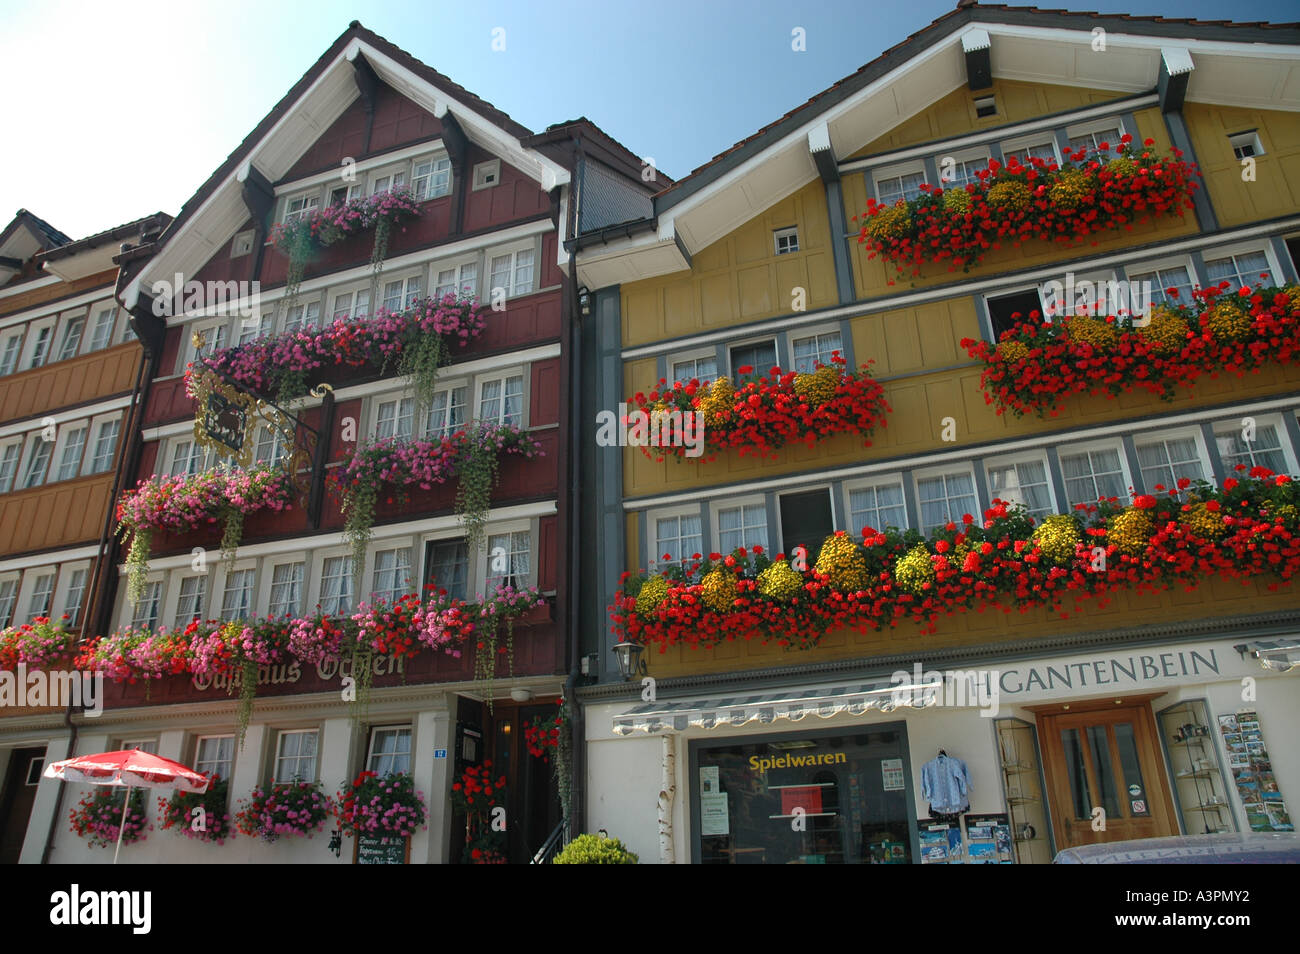 Historische, traditionelle Häuser am Urnaesch Kanton Appenzell dekoriert  mit Blumen vor allem Geranien Schweiz Stockfotografie - Alamy